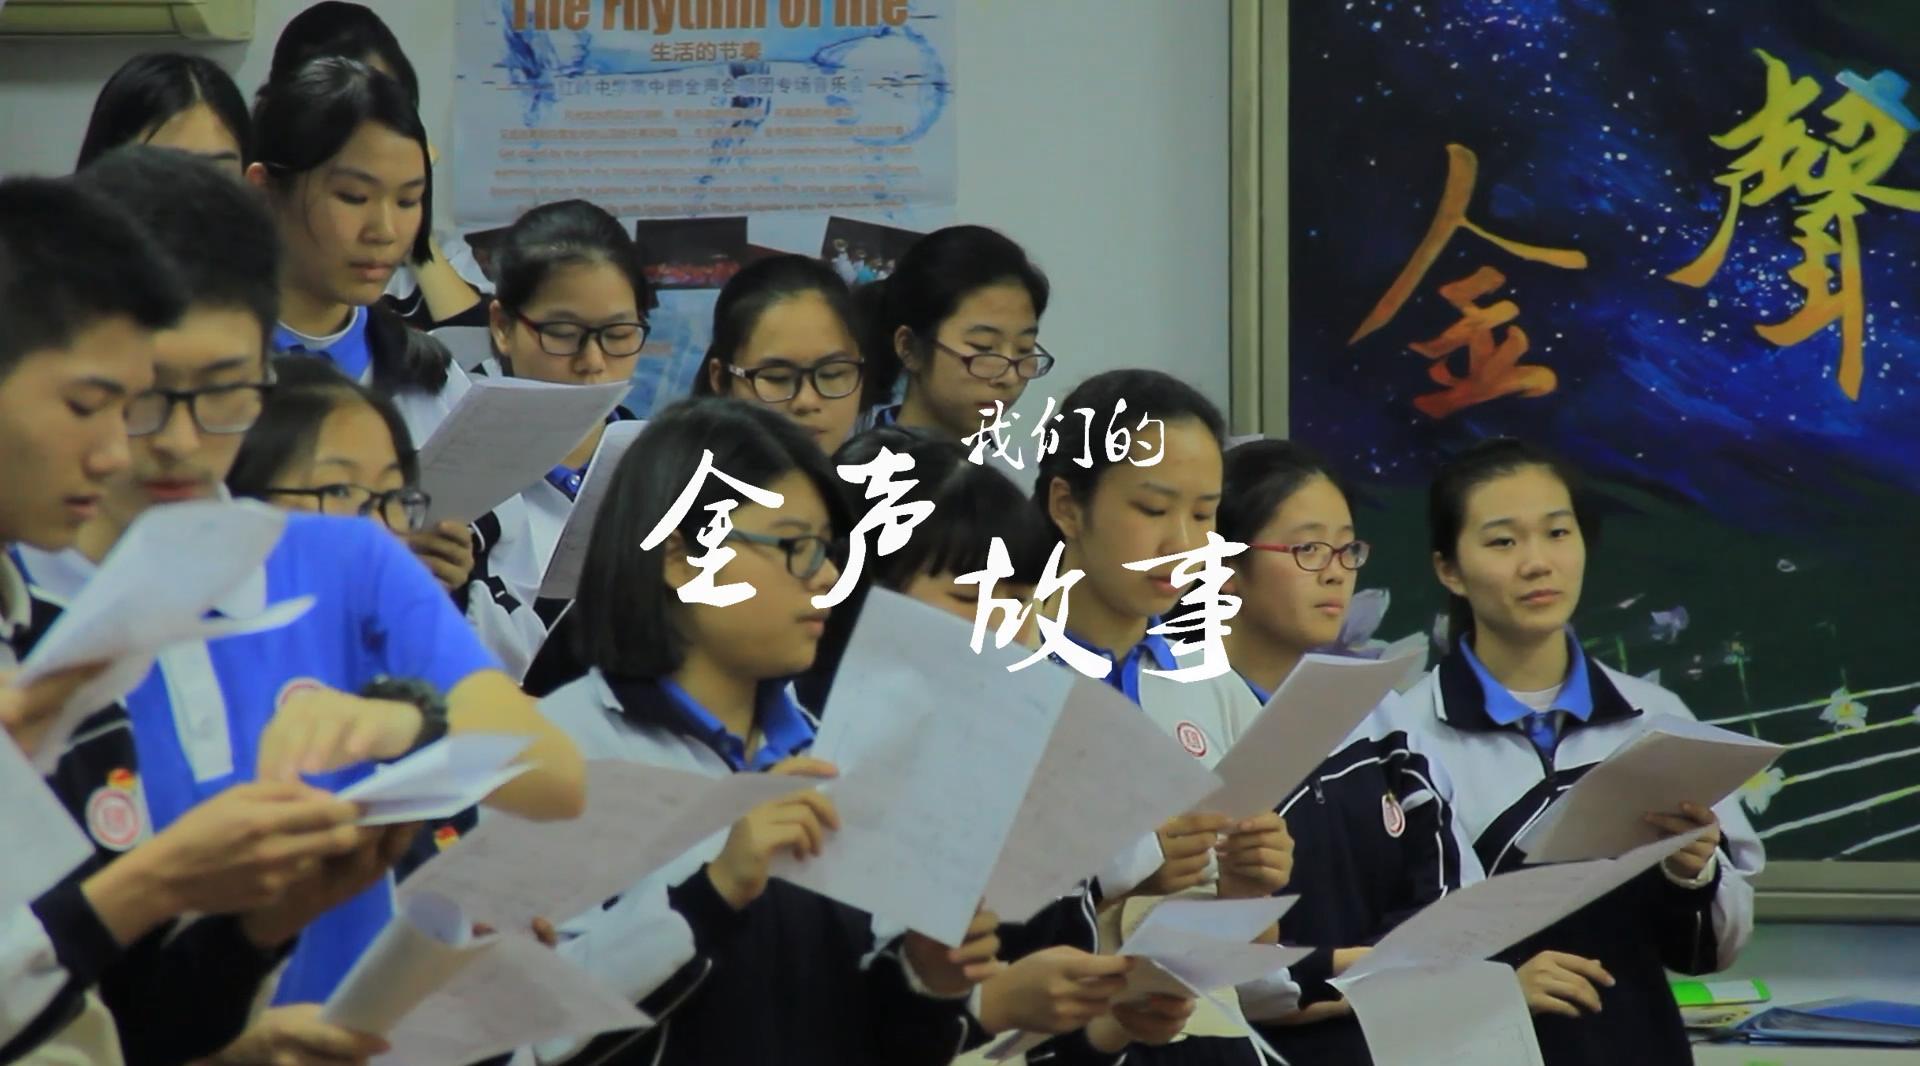 《我们的金声故事》(2017) 纪录片 深圳红岭中学金声合唱团十周年纪念